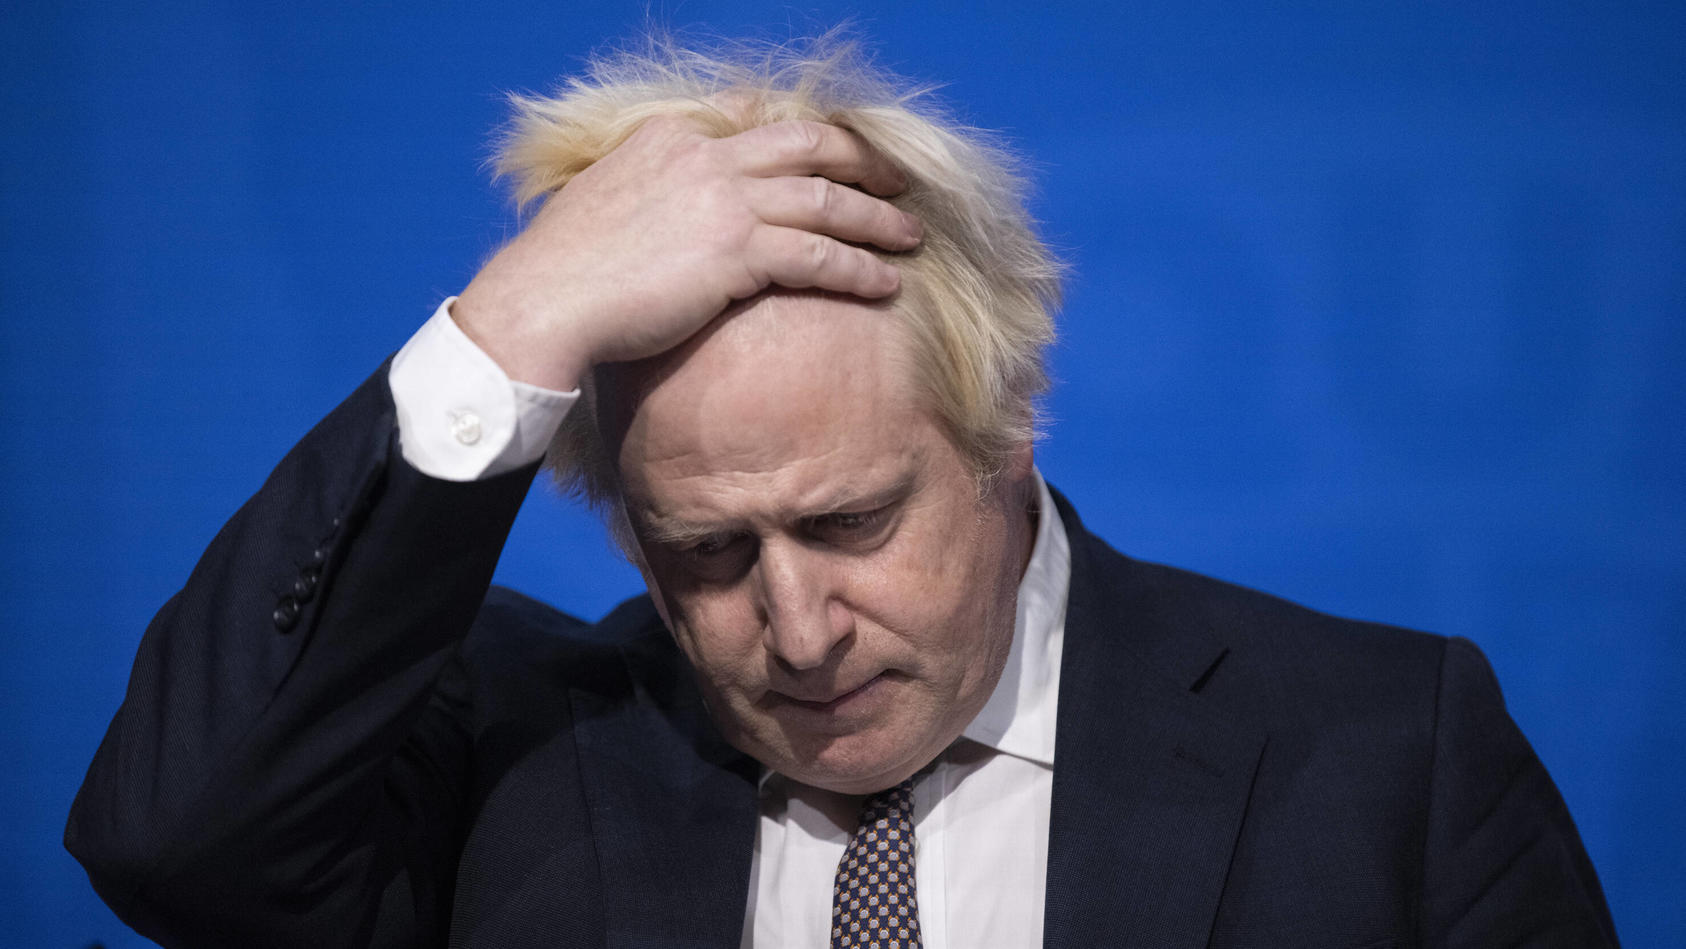 Großbritanniens Premierminister Boris Johnson soll illegale Corona-Partys in seinem Amtssitz gefeiert haben.